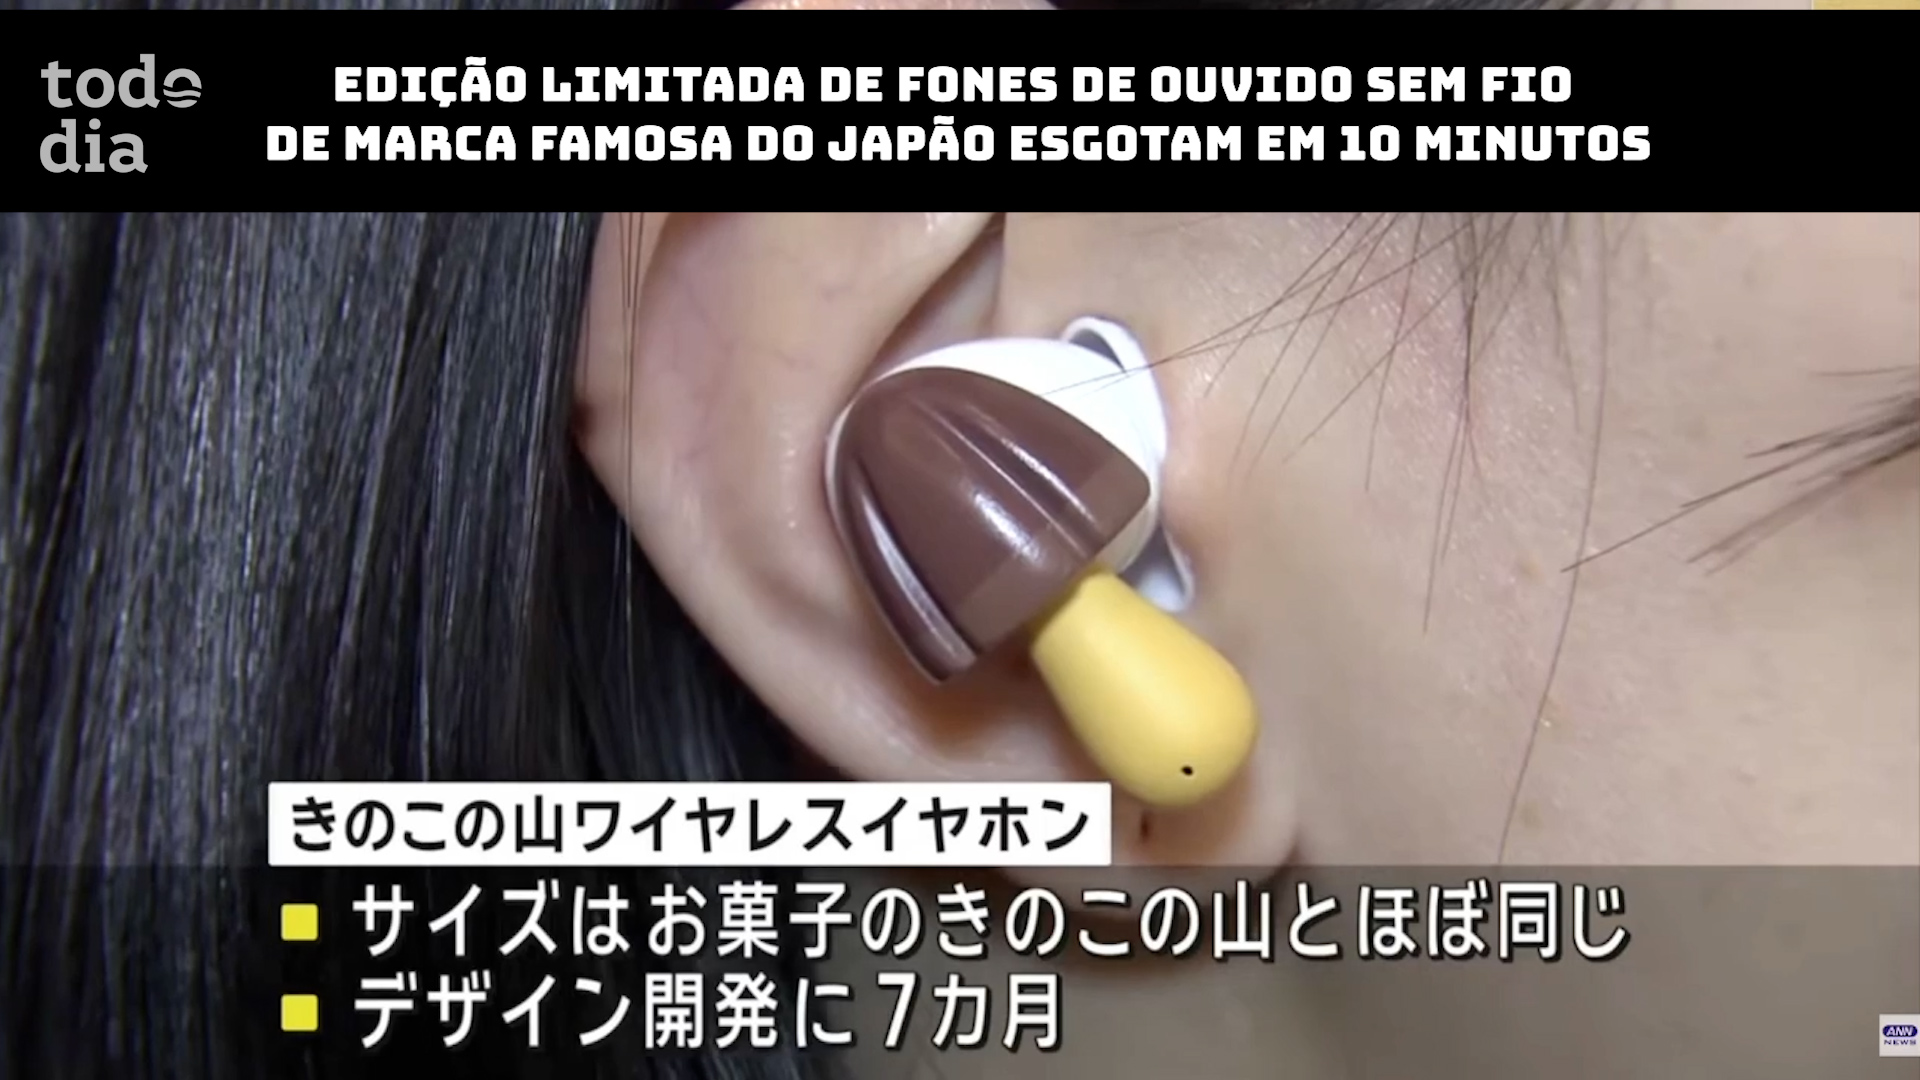 Edição limitada de fones de ouvido sem fio de marca famosa do Japão esgotam em 10 minutos